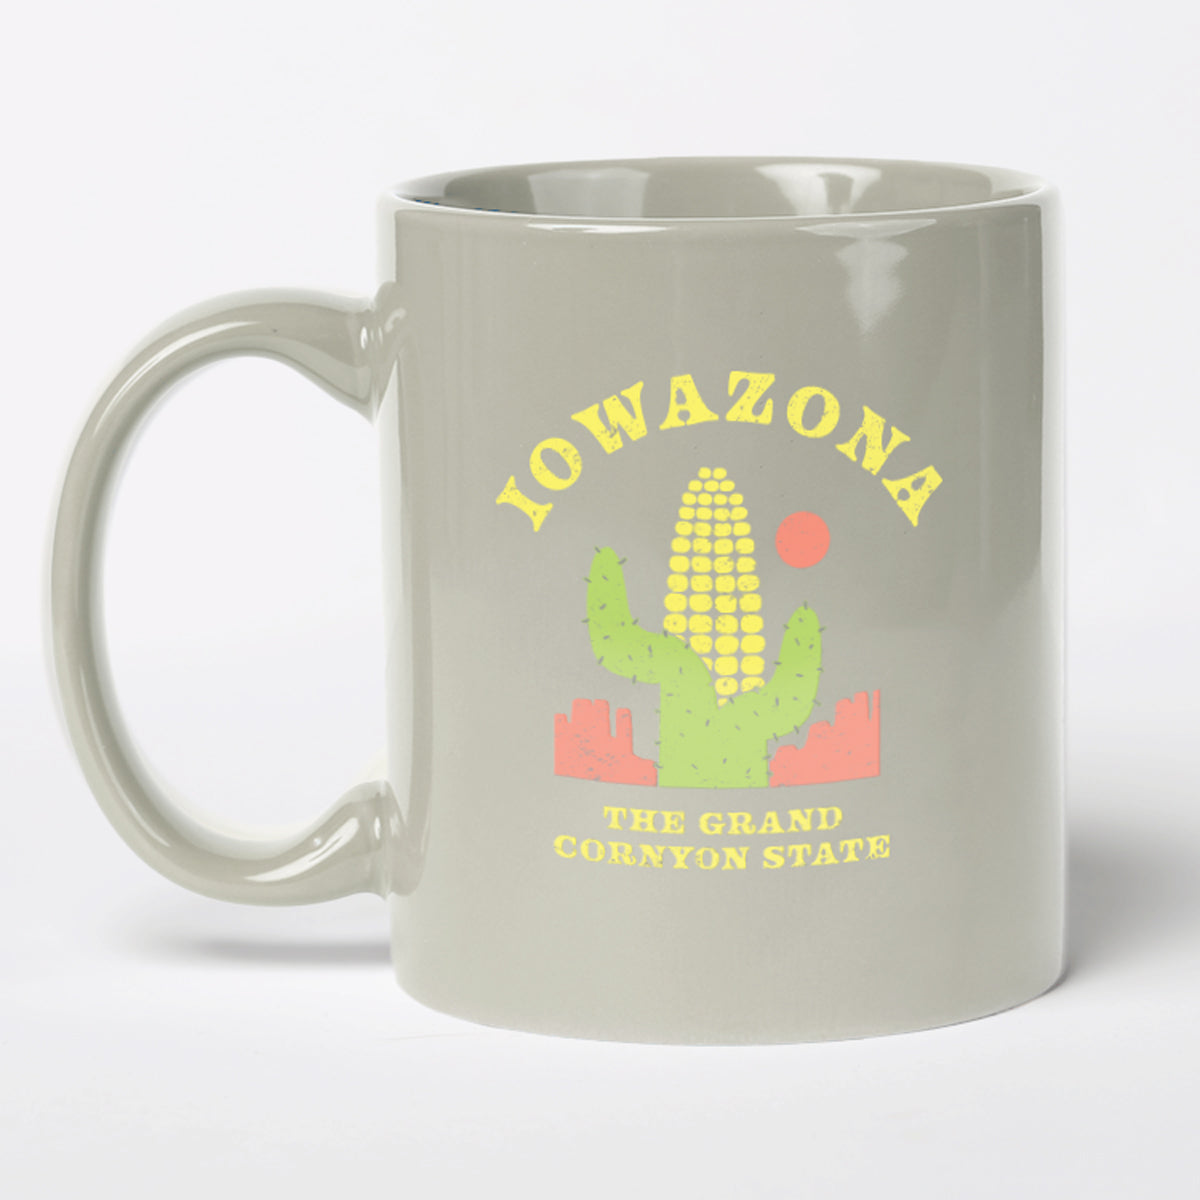 Iowazona Mug - Bozz Prints